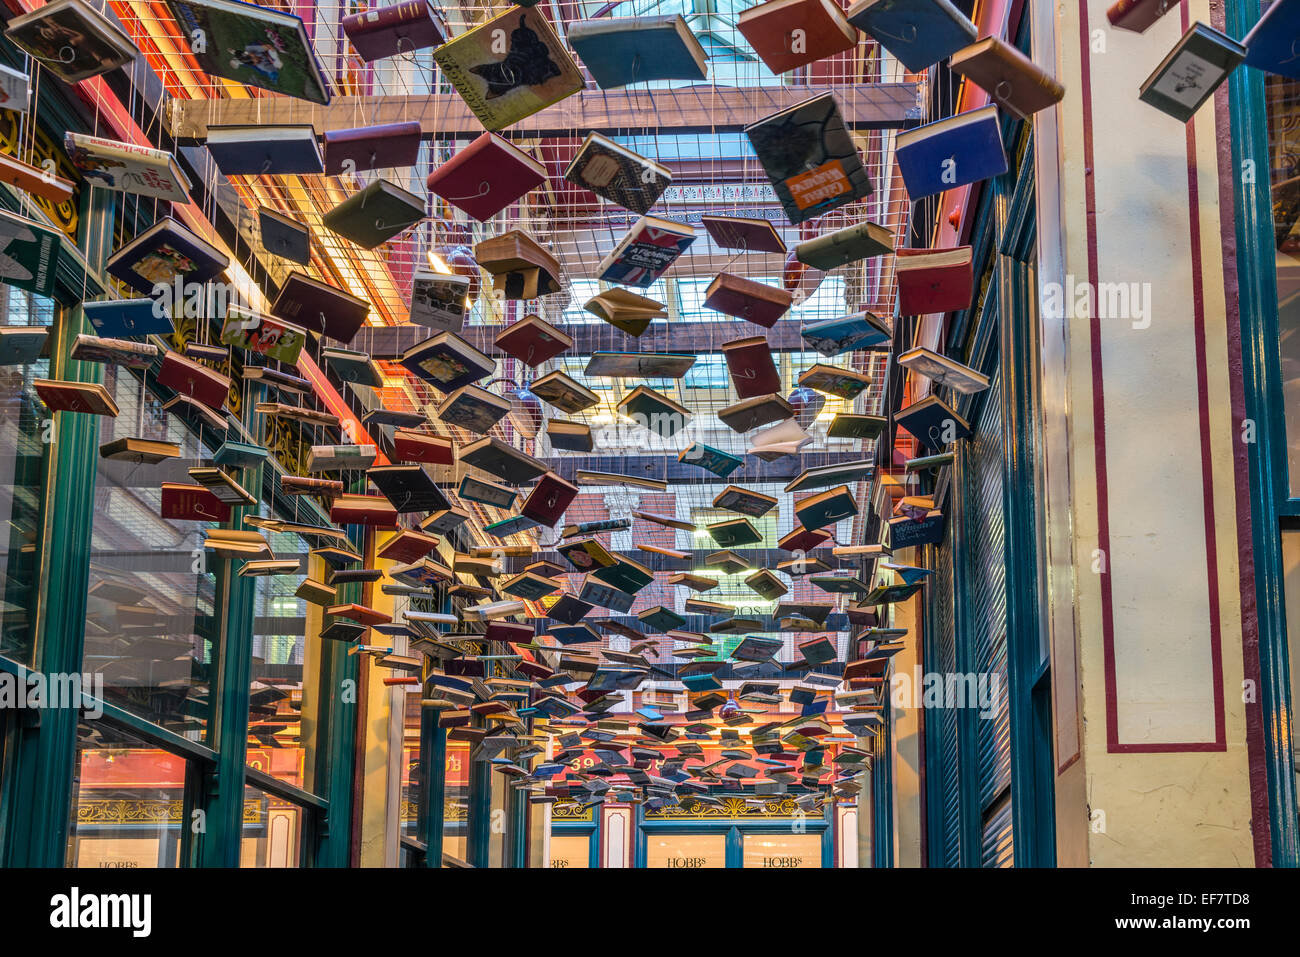 Con tetto di stile vittoriano mercato Leadenhall edificio con un passaggio di libri flottante che sospende dal soffitto - solo uso editoriale Foto Stock